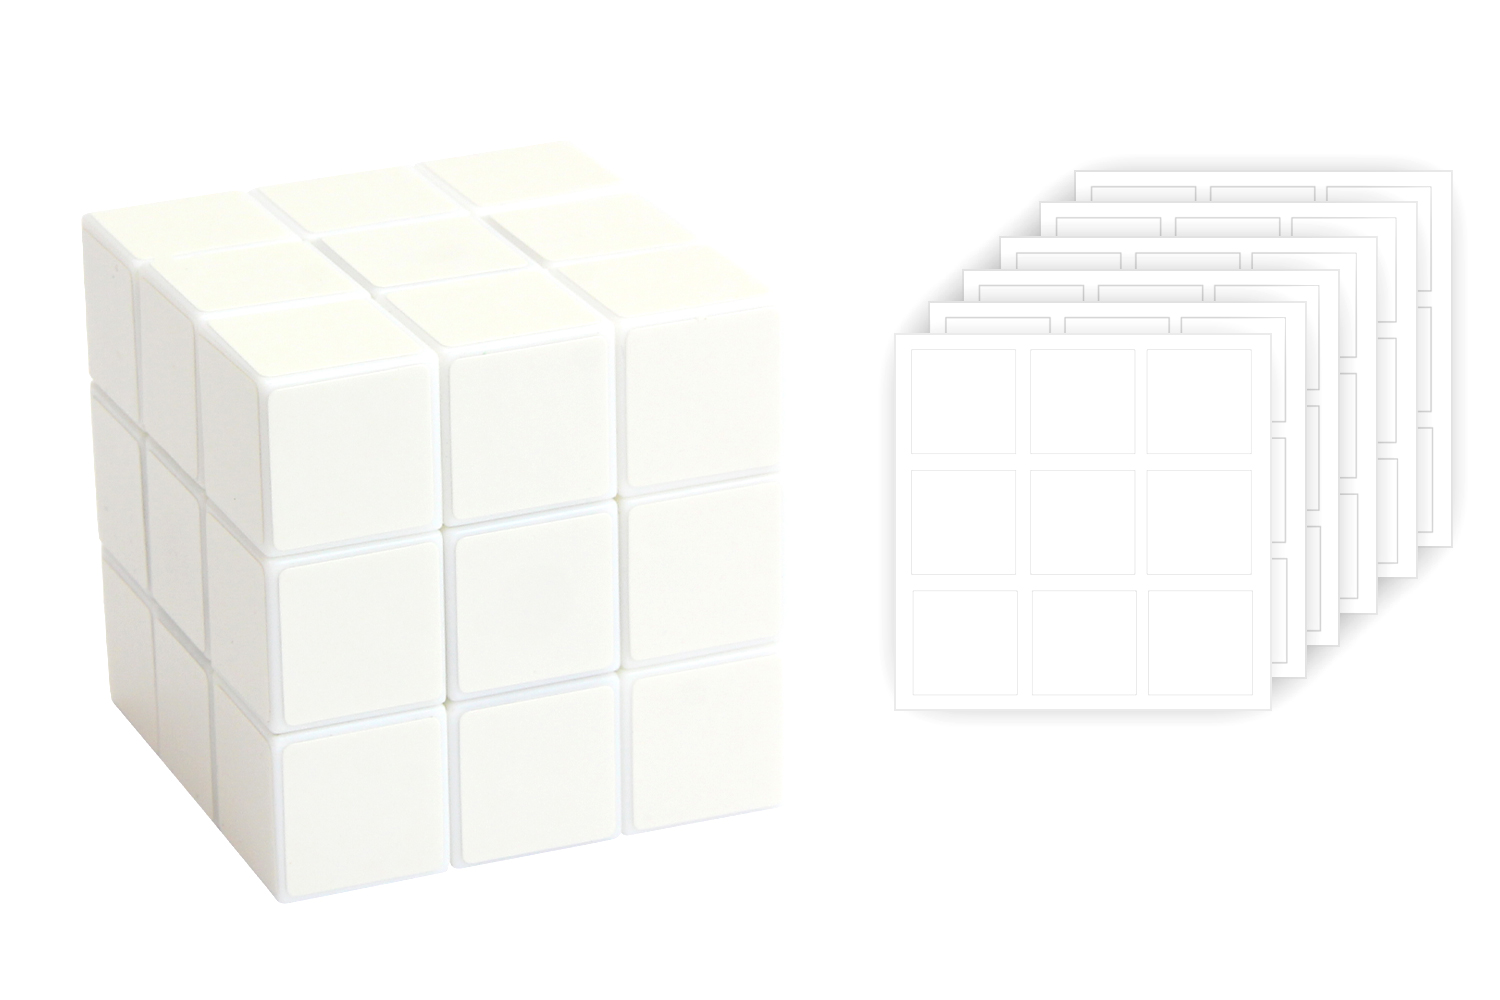 Rubik's cube : nos meilleurs modèles de diverses formes